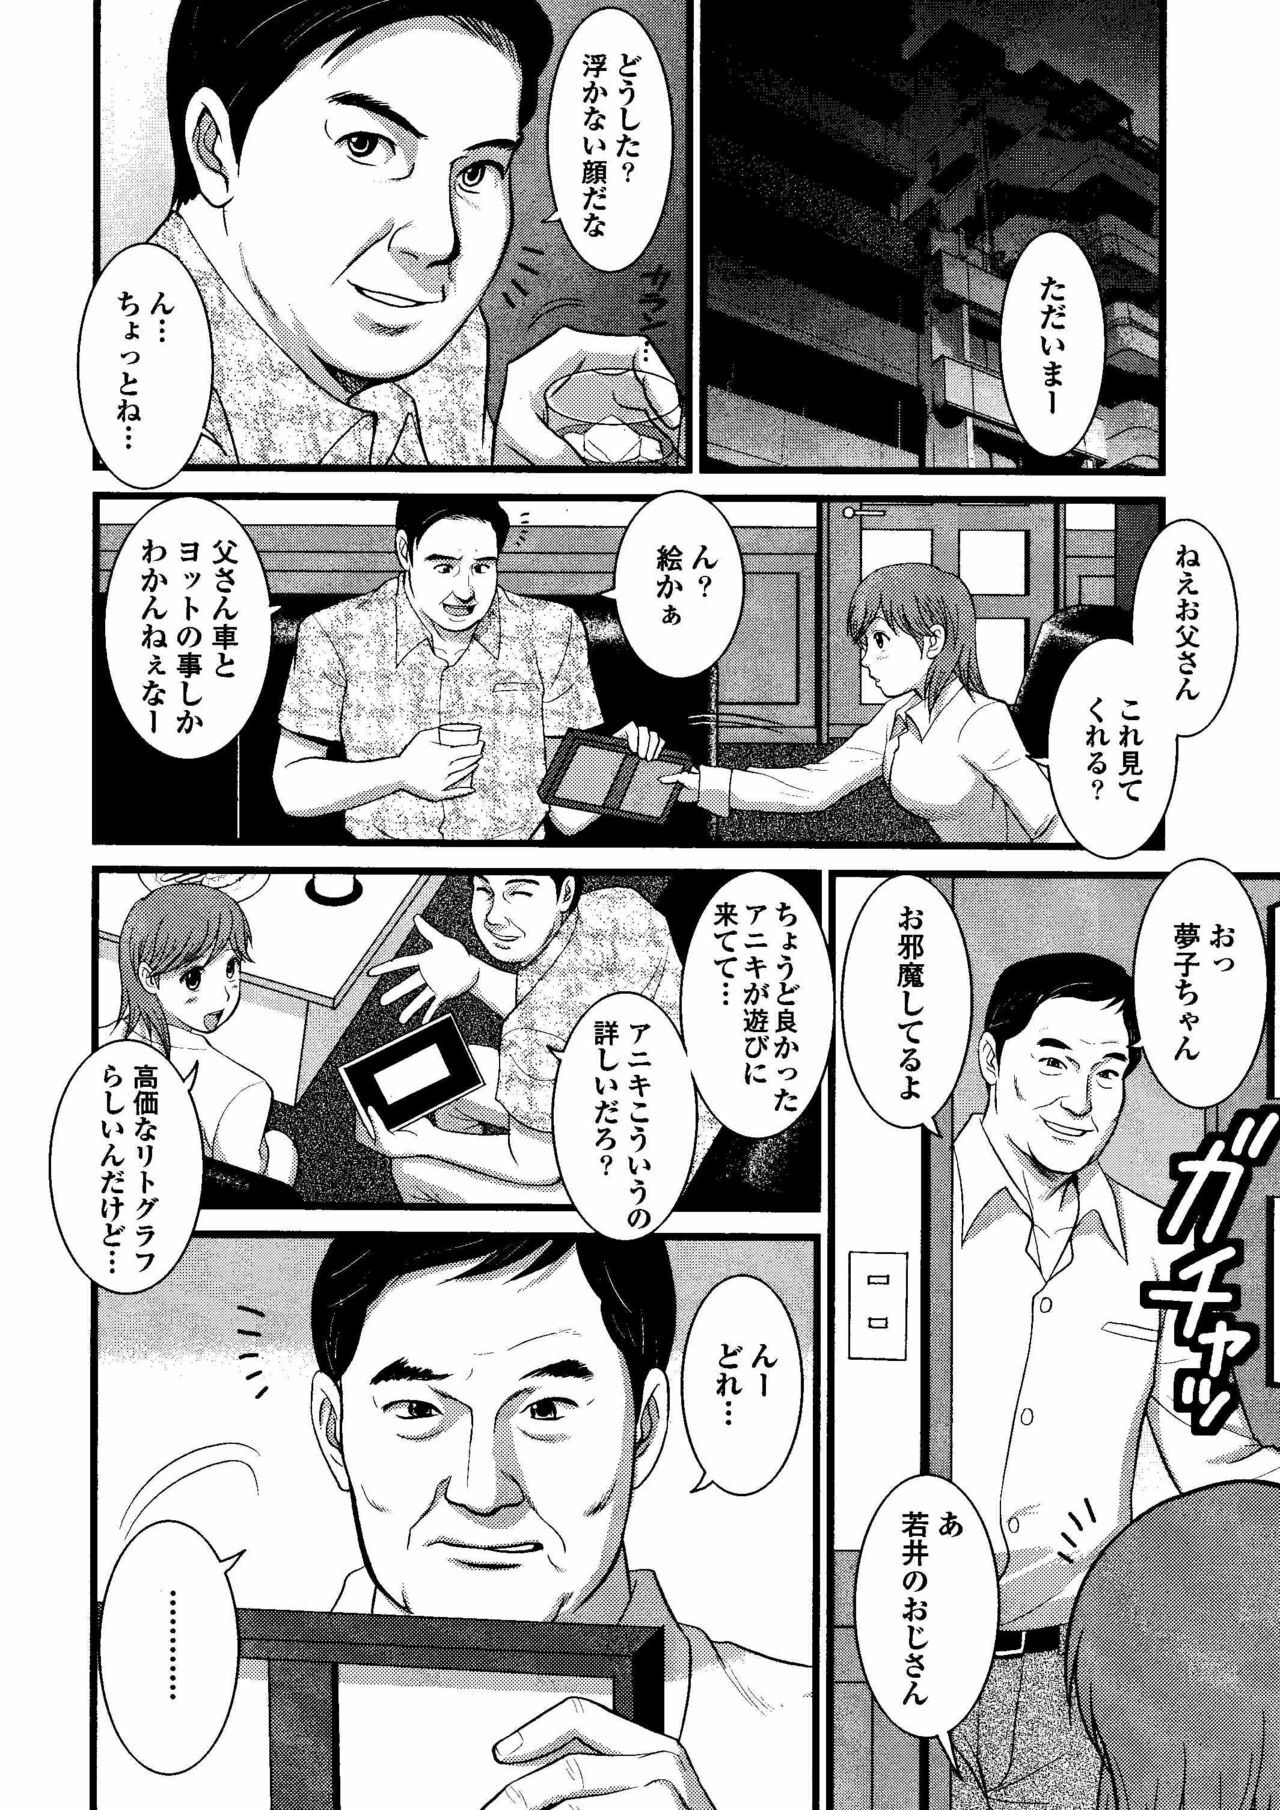 Haken no Muuko-san 8 [Saigado] page 9 full